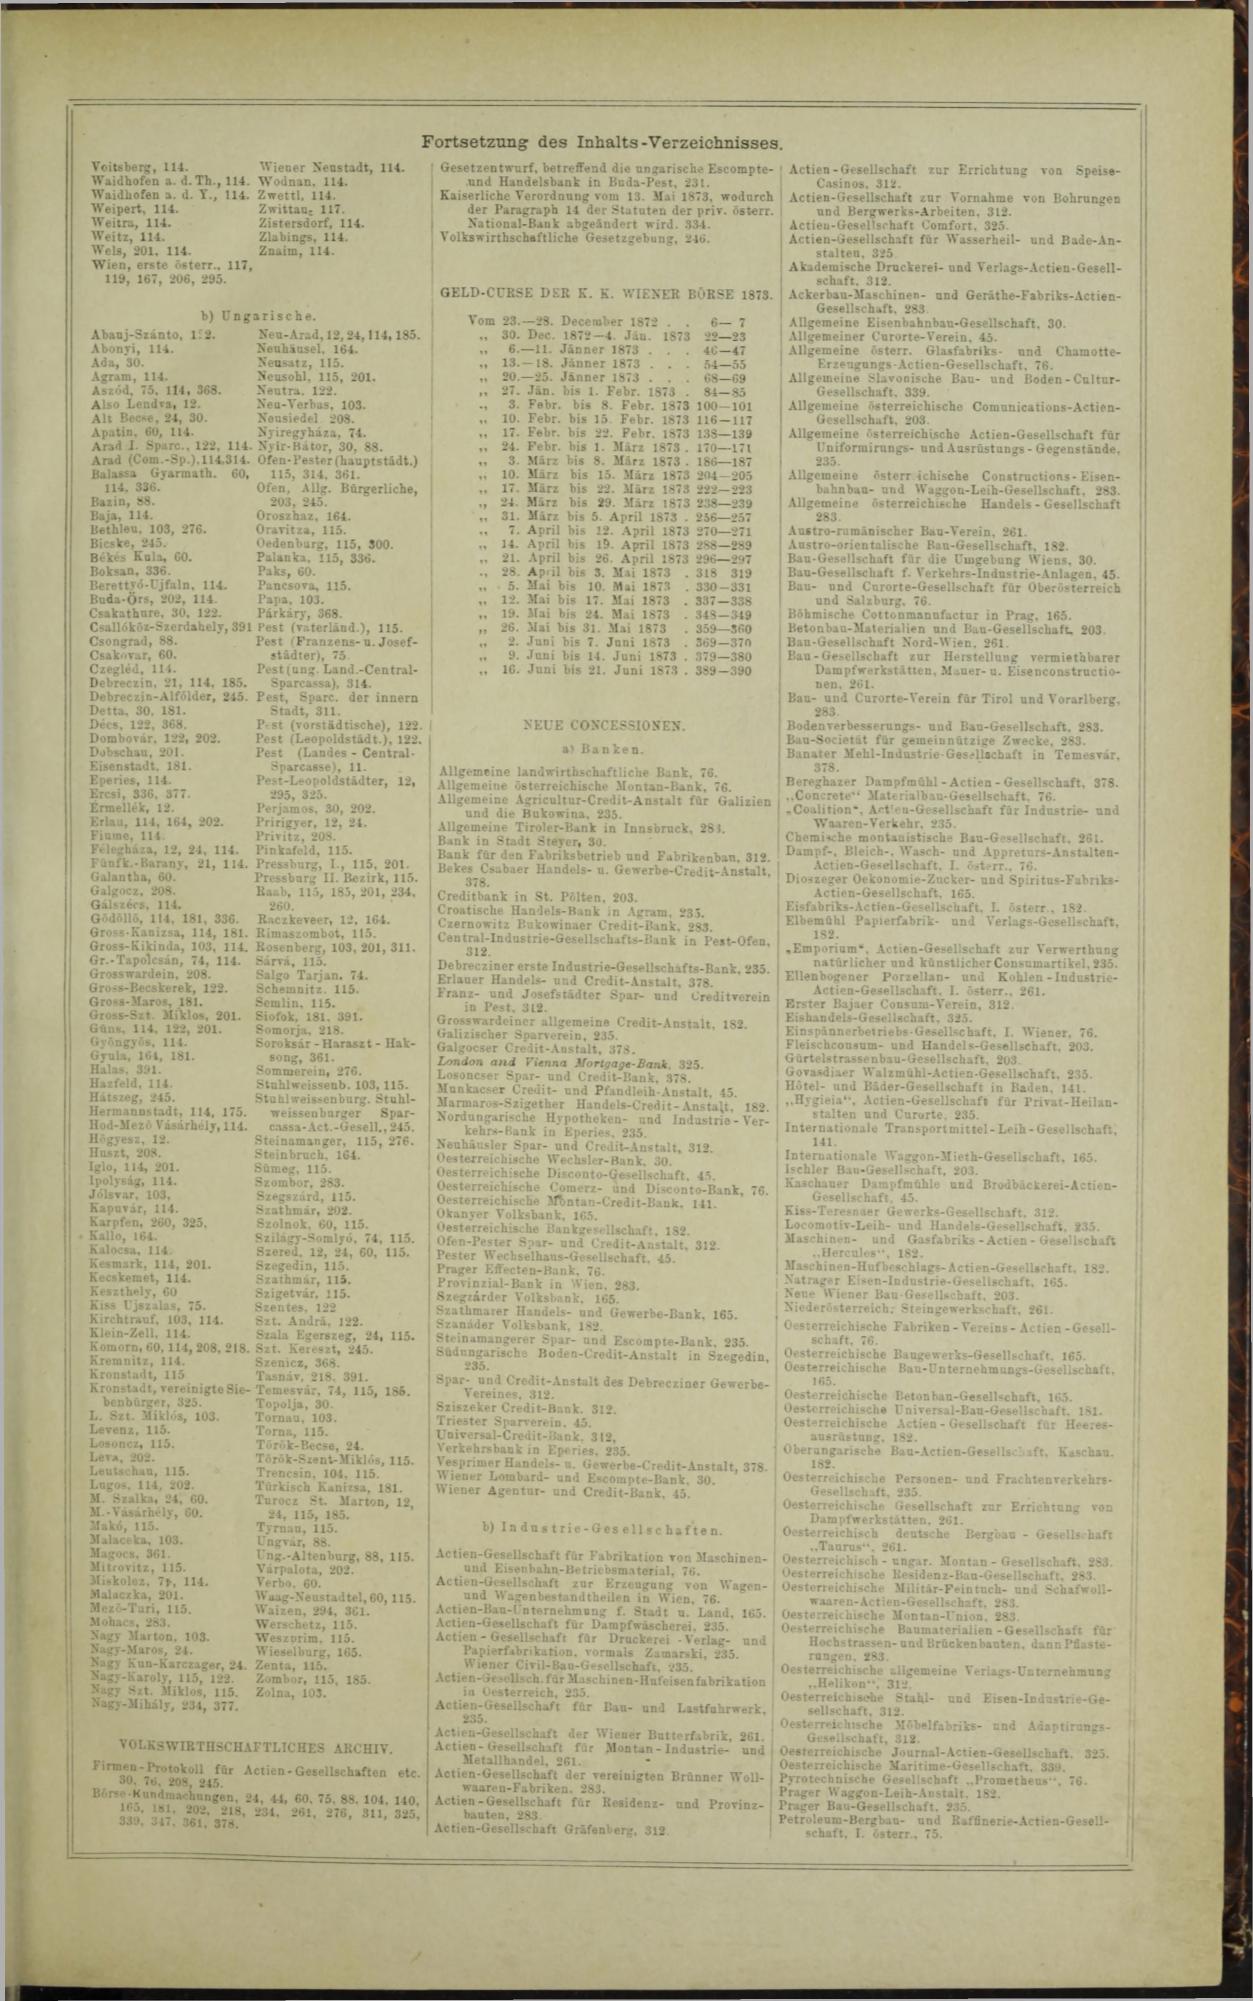 Der Tresor 08.01.1873 - Seite 23